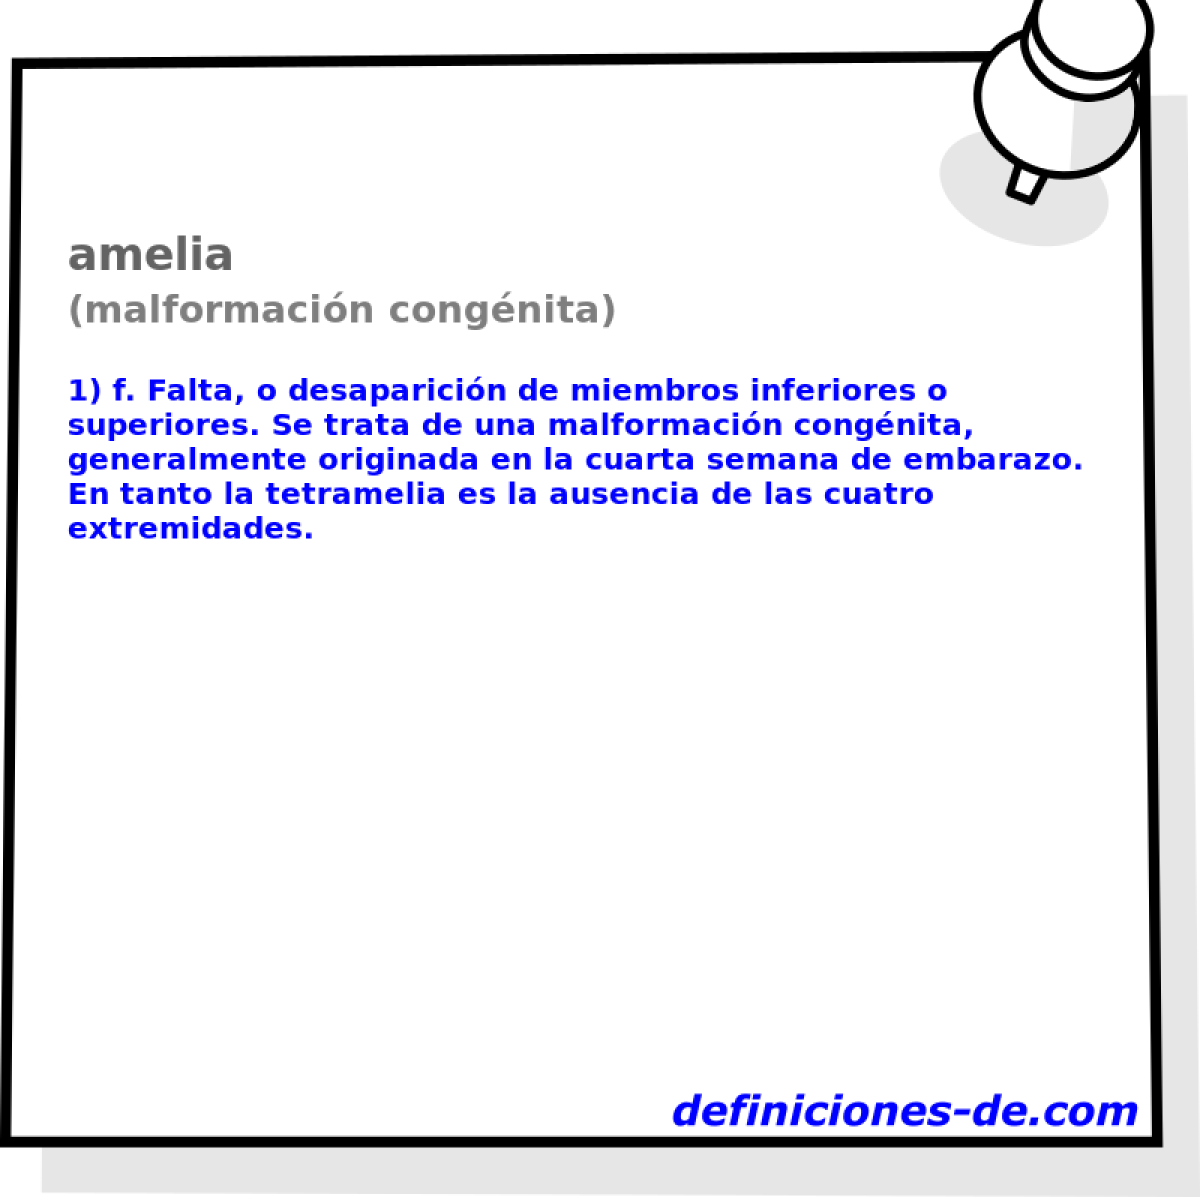 amelia (malformacin congnita)